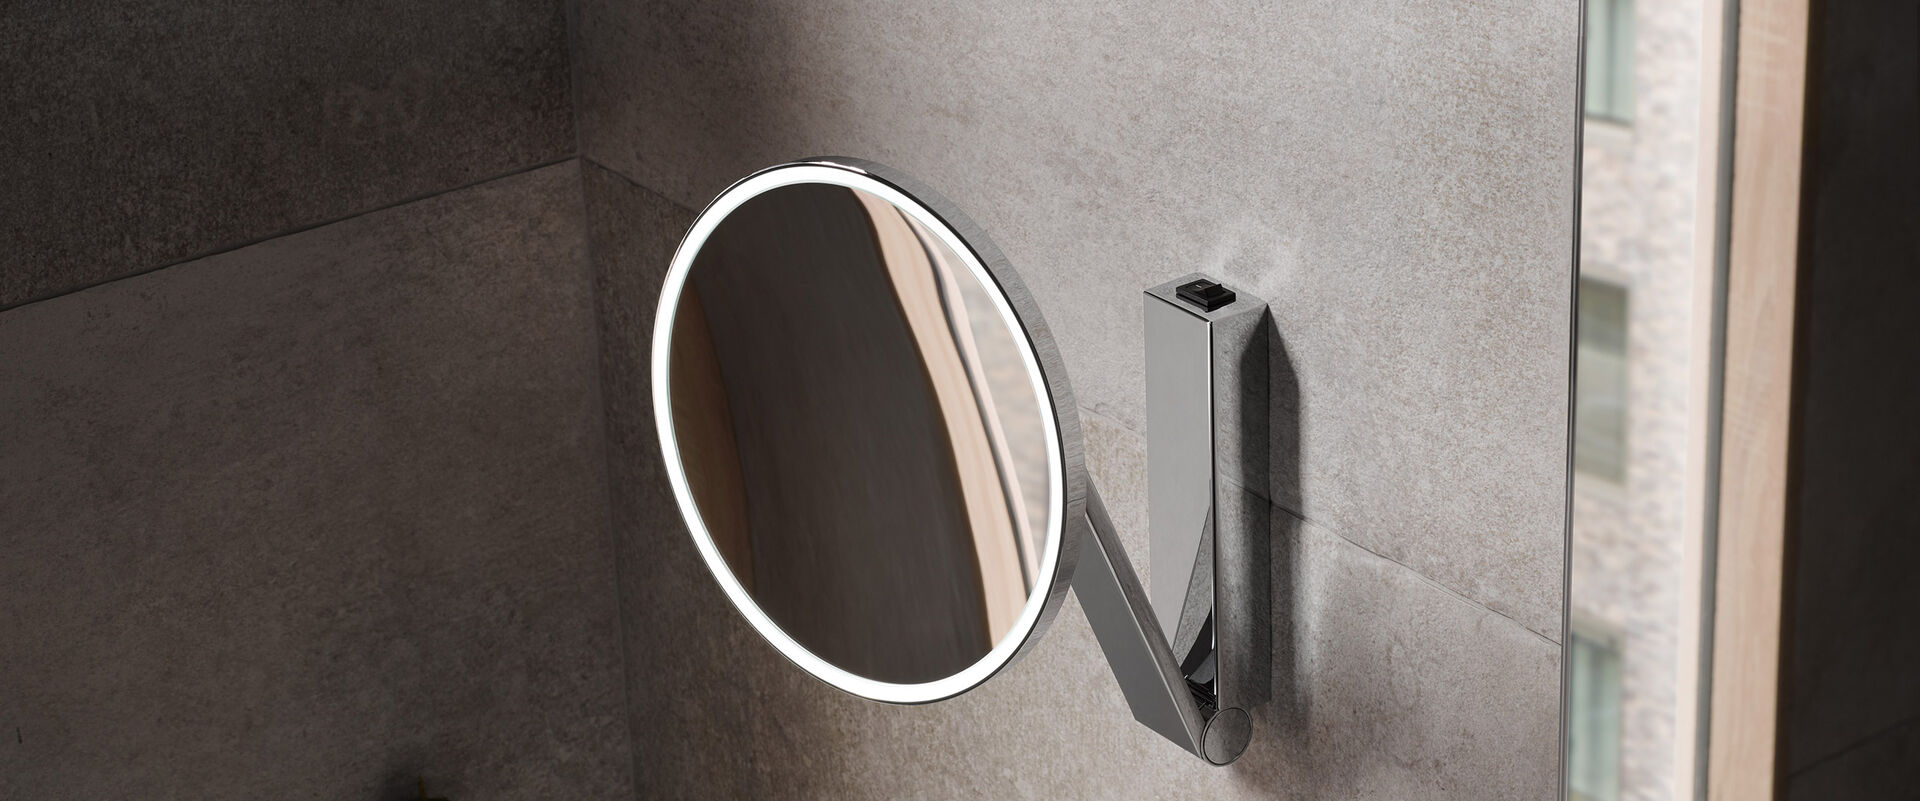 Kosmetikspiegel iLook move von KEUCO in rundem Design und mit LED-Lichttechnik.